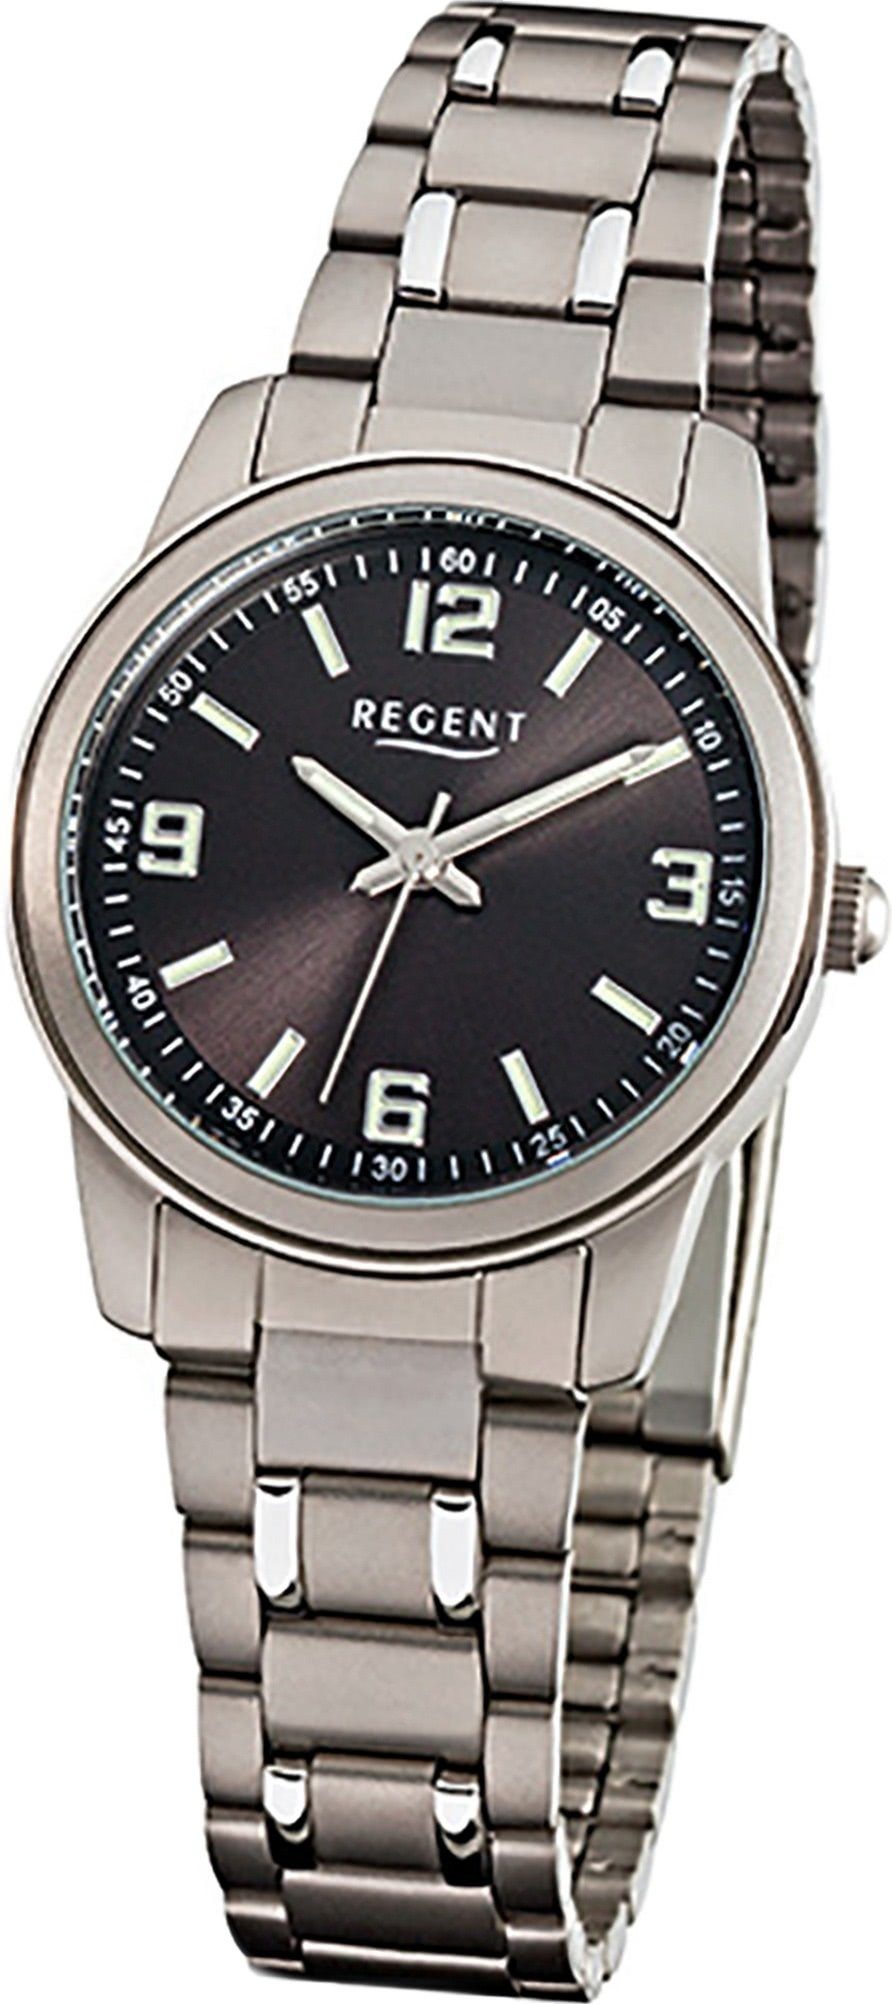 Regent Quarzuhr 27mm), mit Titanarmband, Uhr klein F-858 Titan (ca. Elegant-S Damen Damenuhr Regent rundes Gehäuse, Quarzuhr